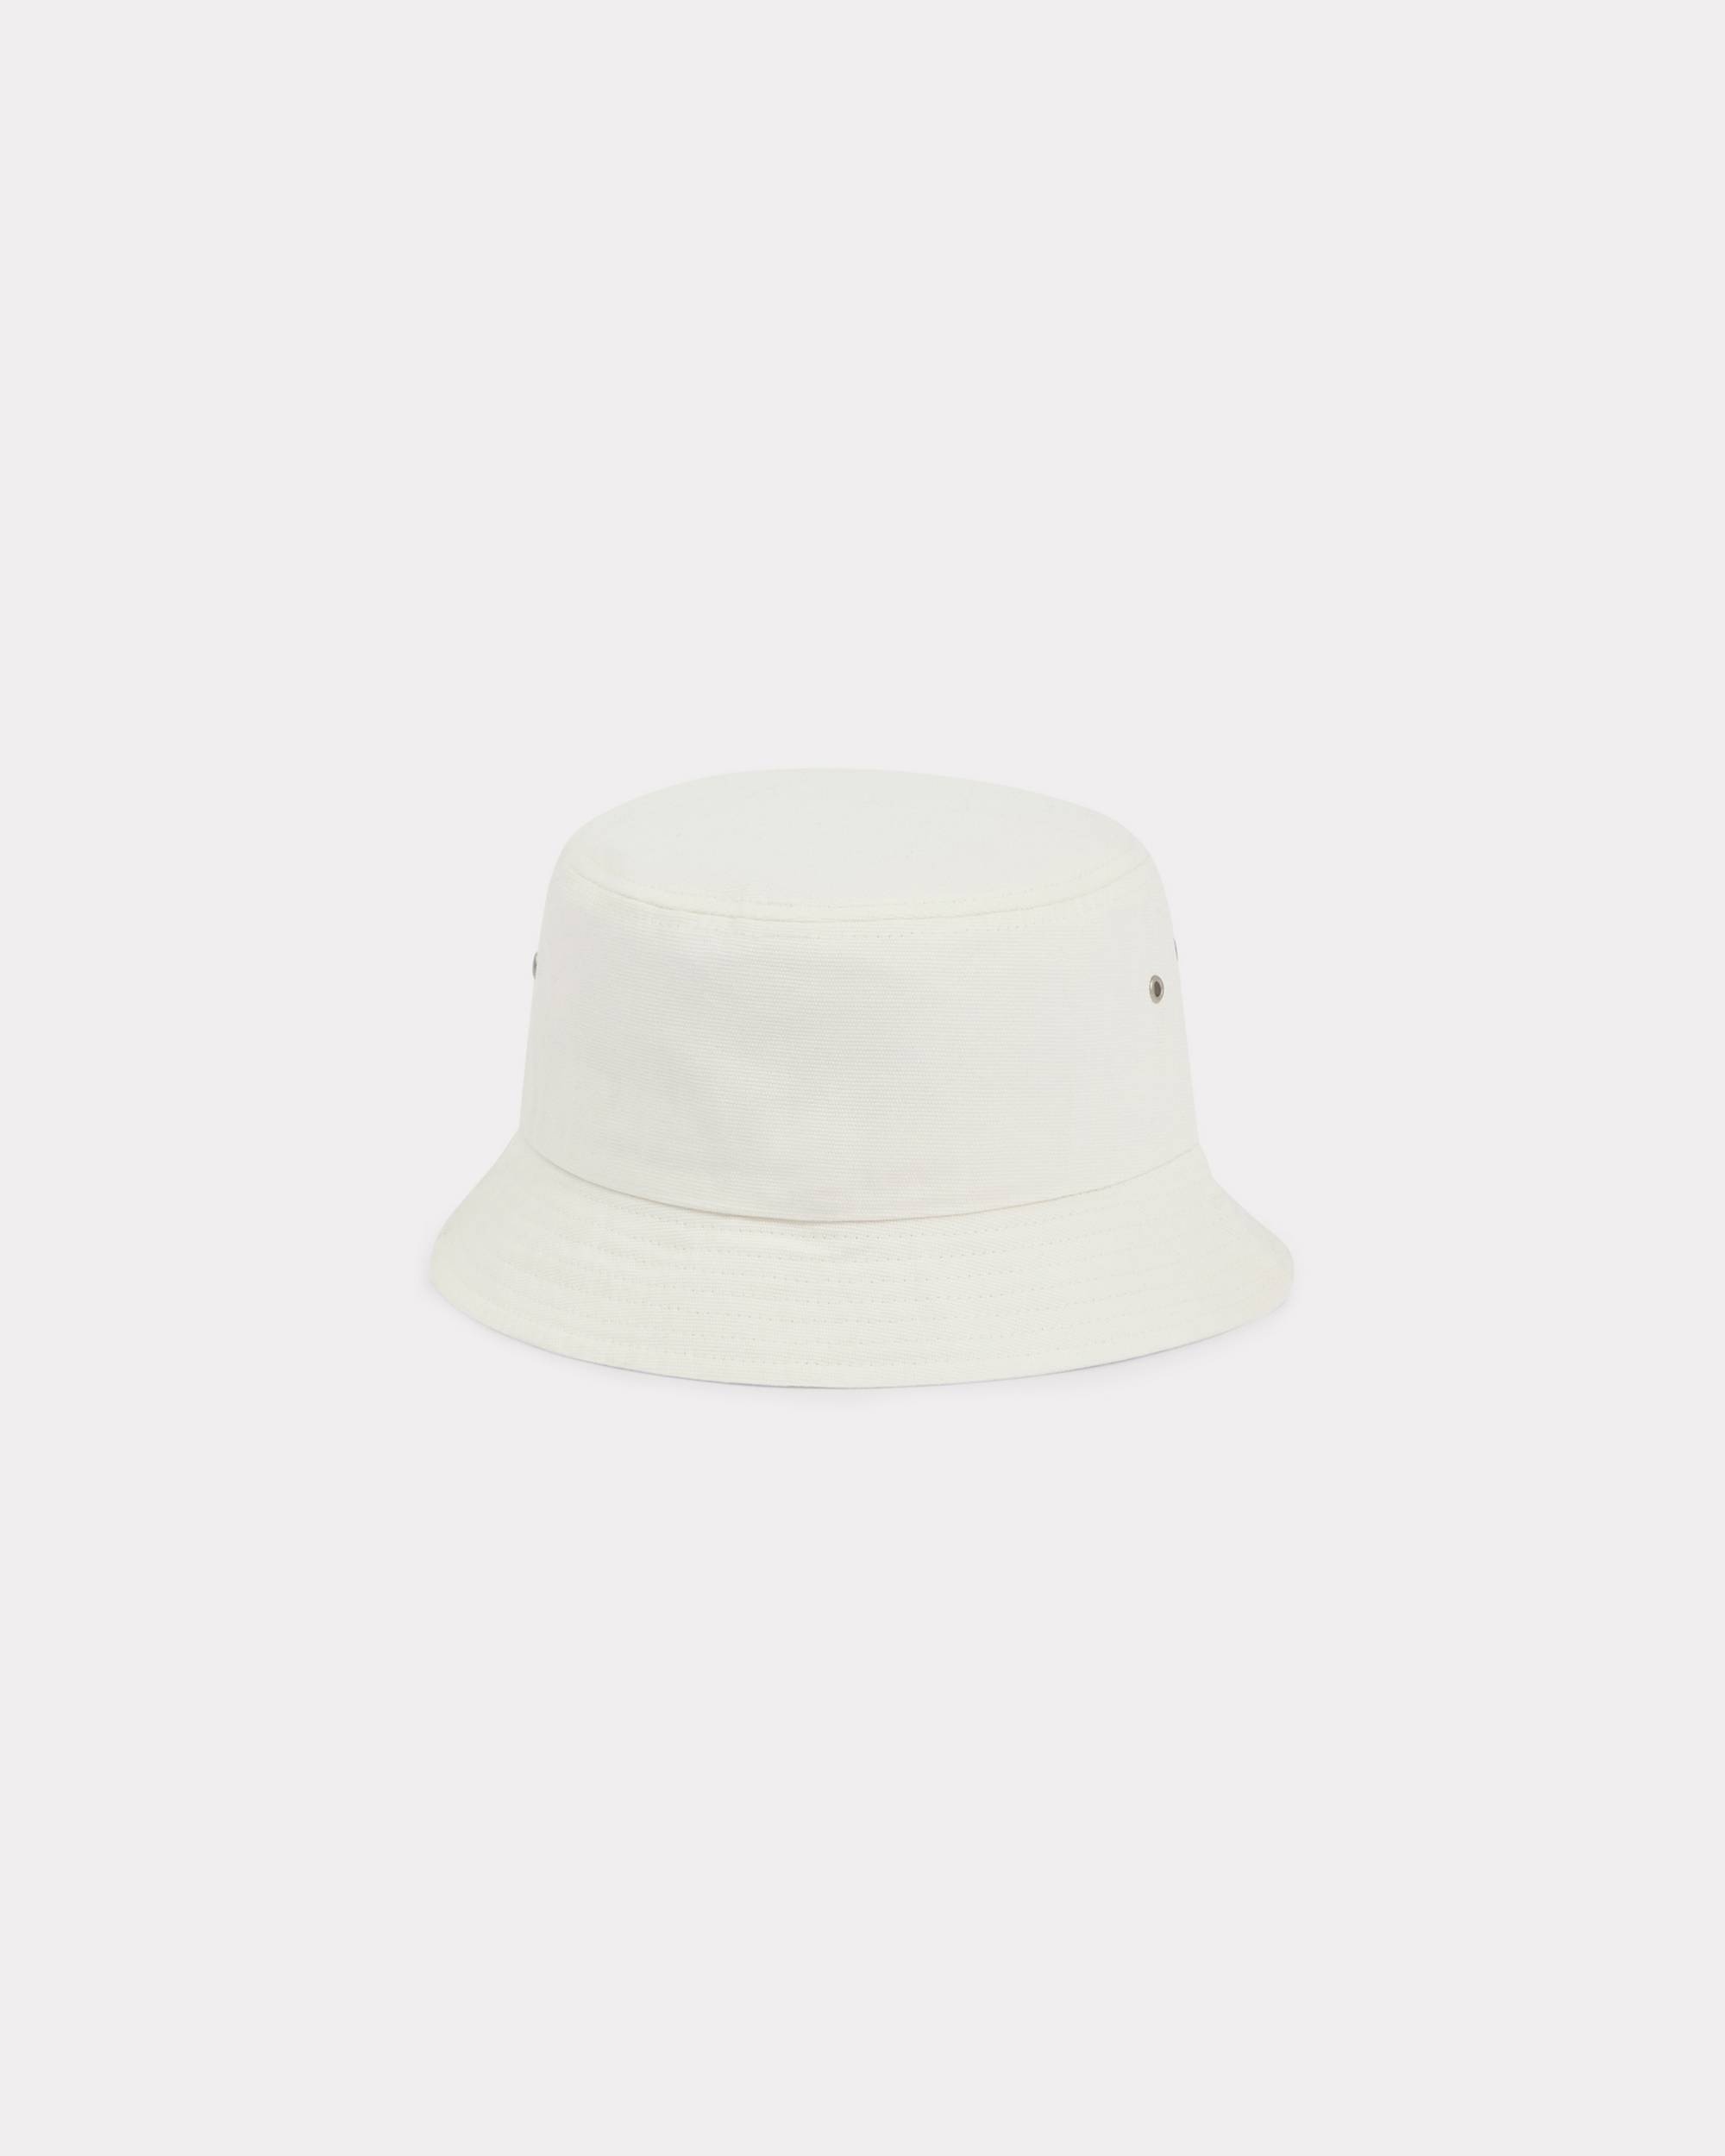 'BOKE FLOWER' Crest bucket hat - 2